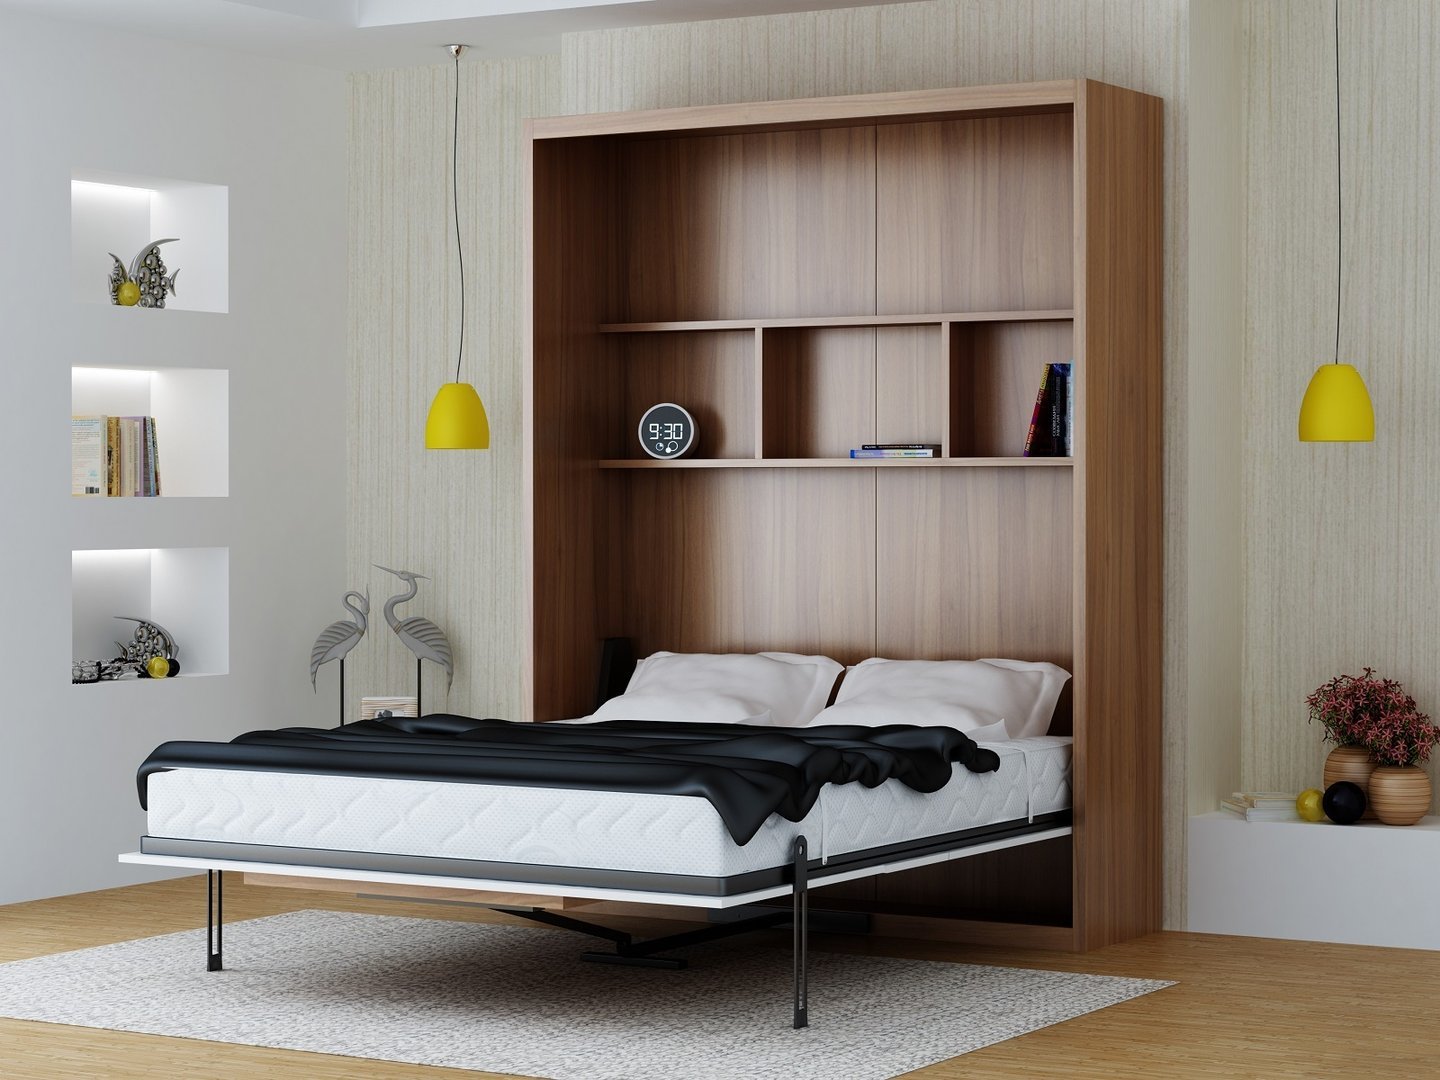 Кровать встроенная в шкаф: эффективная экономия пространства (70 фото дизайна) — дом и сад